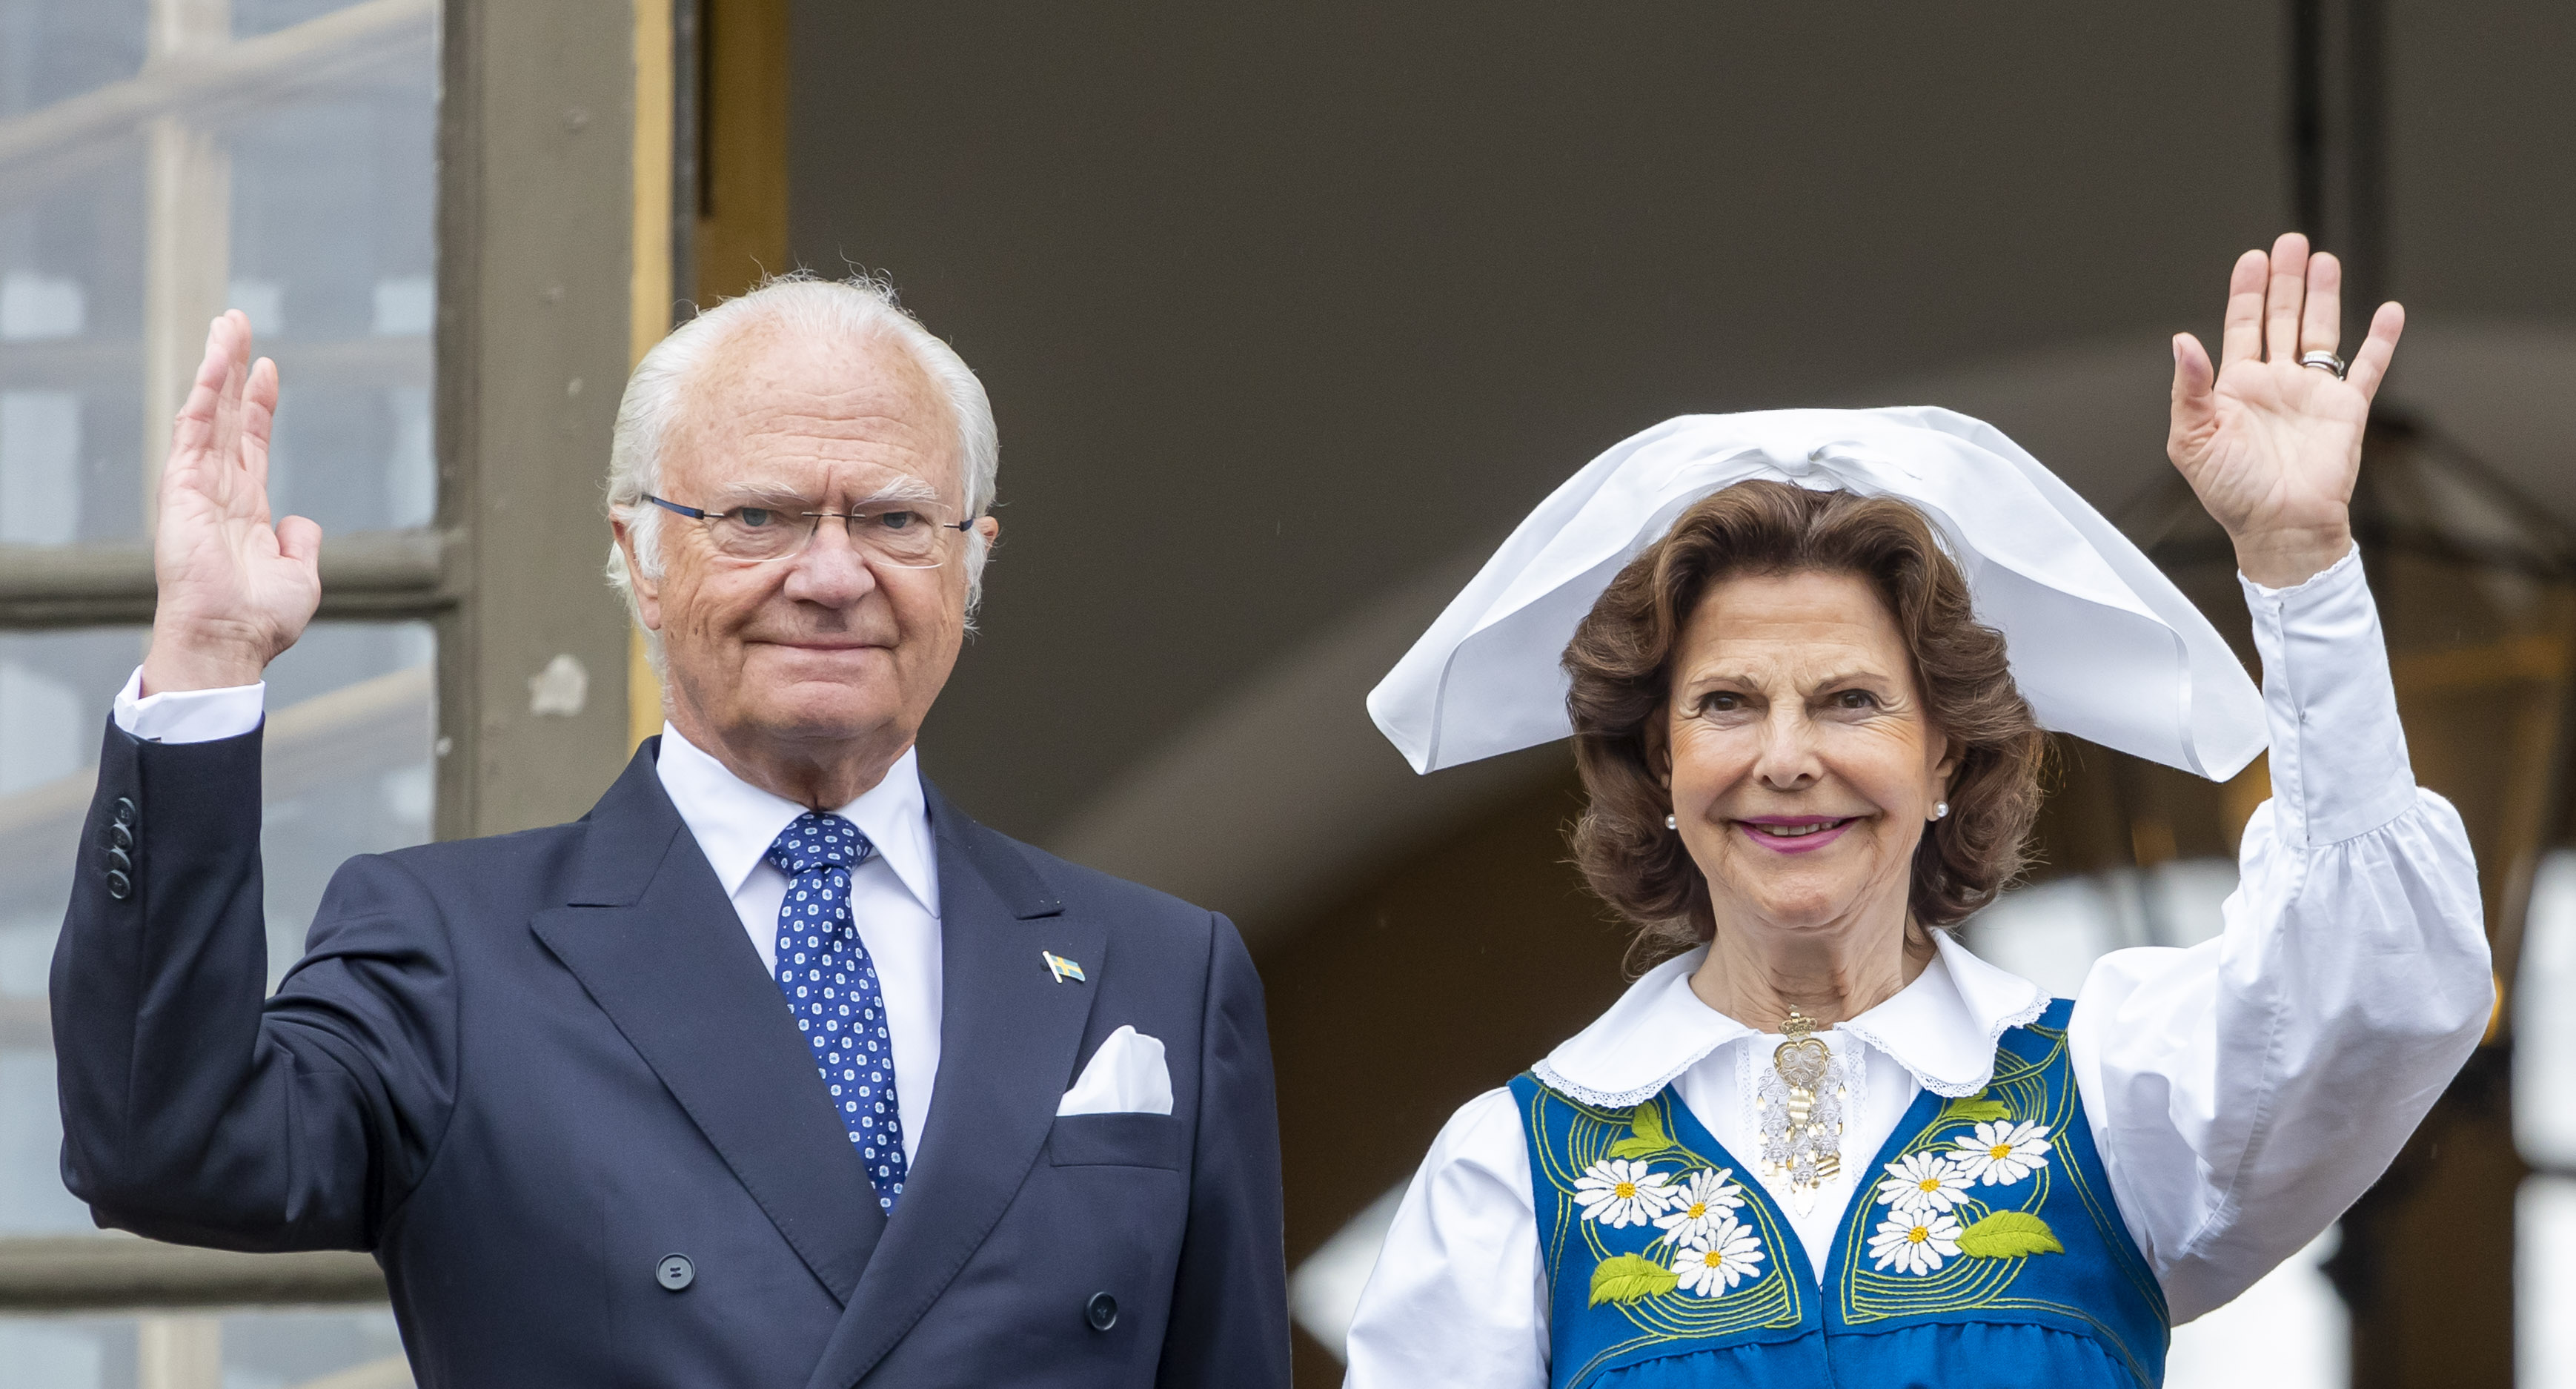 Drottning Silvia, Skådespelare, Alicia Vikander, Kungafamiljen, Kung Carl XVI Gustaf, Hedda Stiernstedt